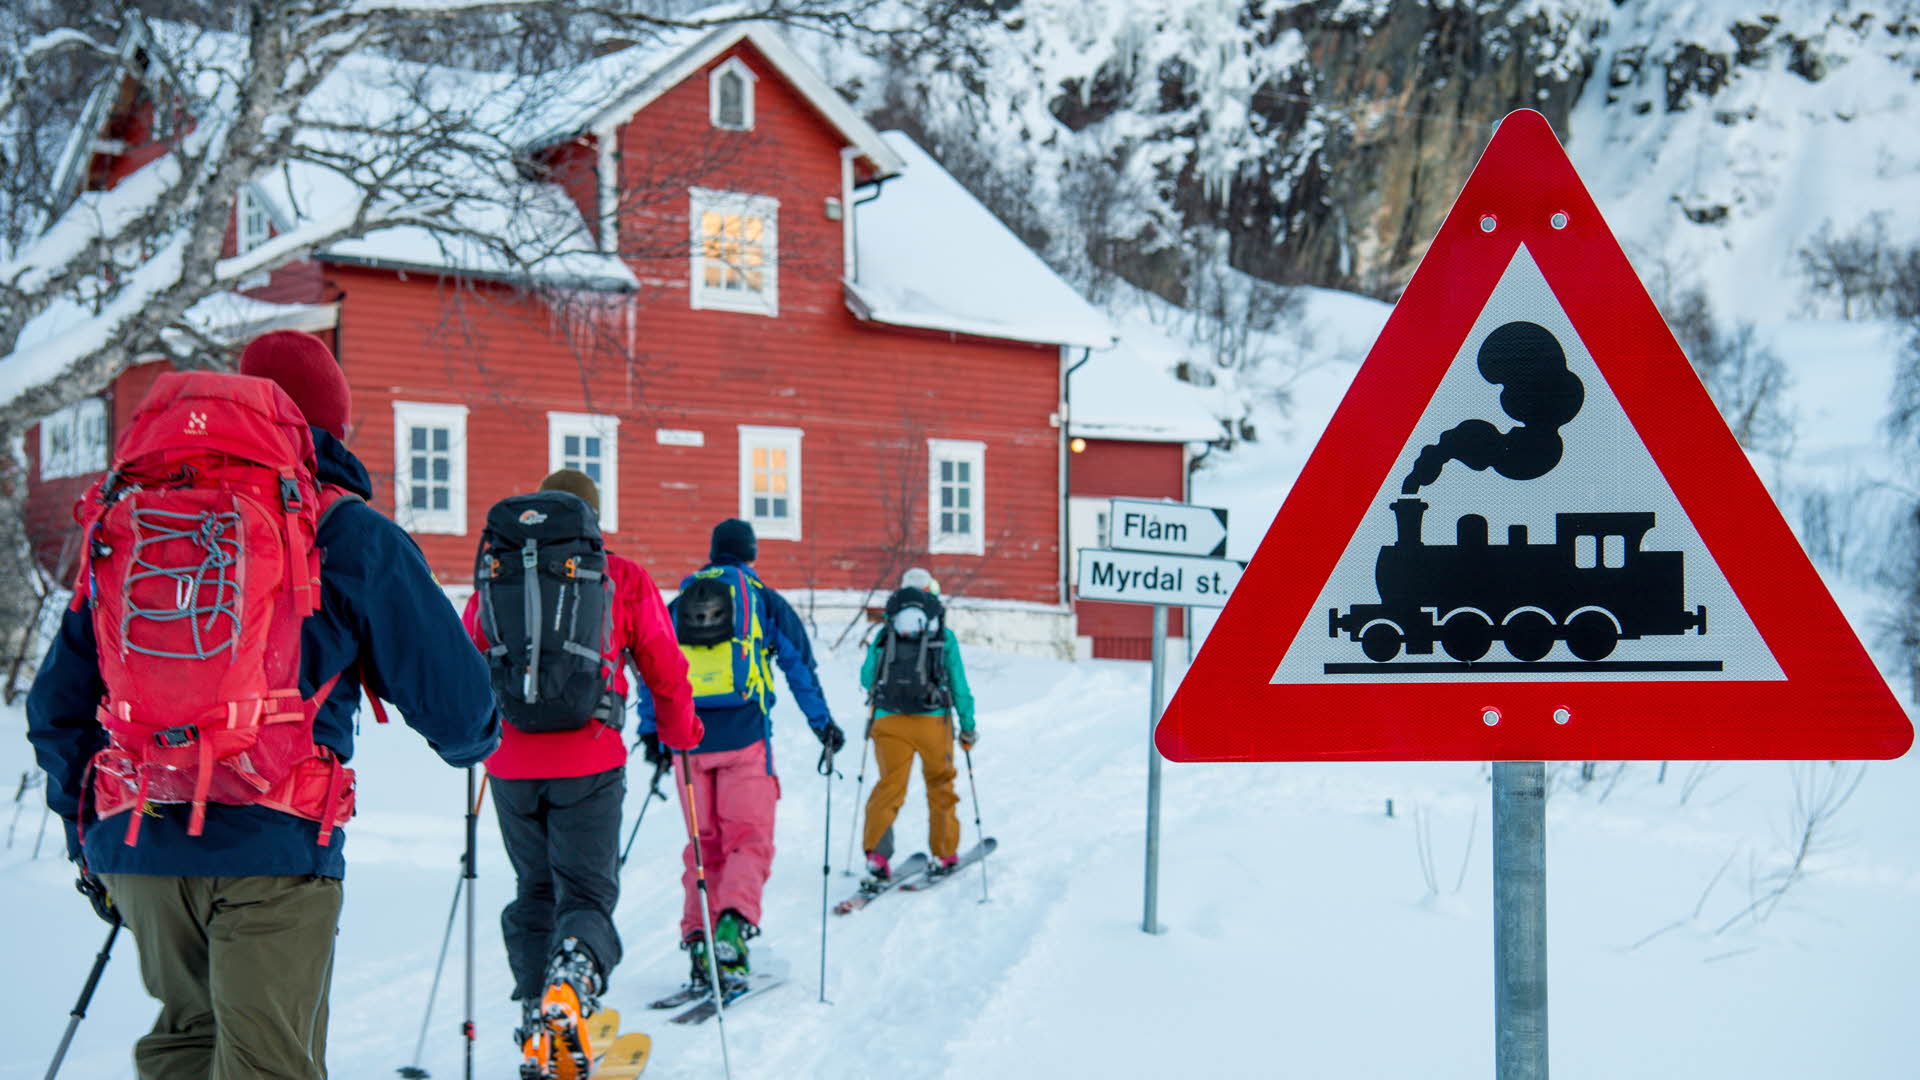 Quatre skieurs de randonnée en route vers la maison d’hôtes rouge de Vatnahalsen passant devant le panneau signalant le chemin de fer de Flam en hiver